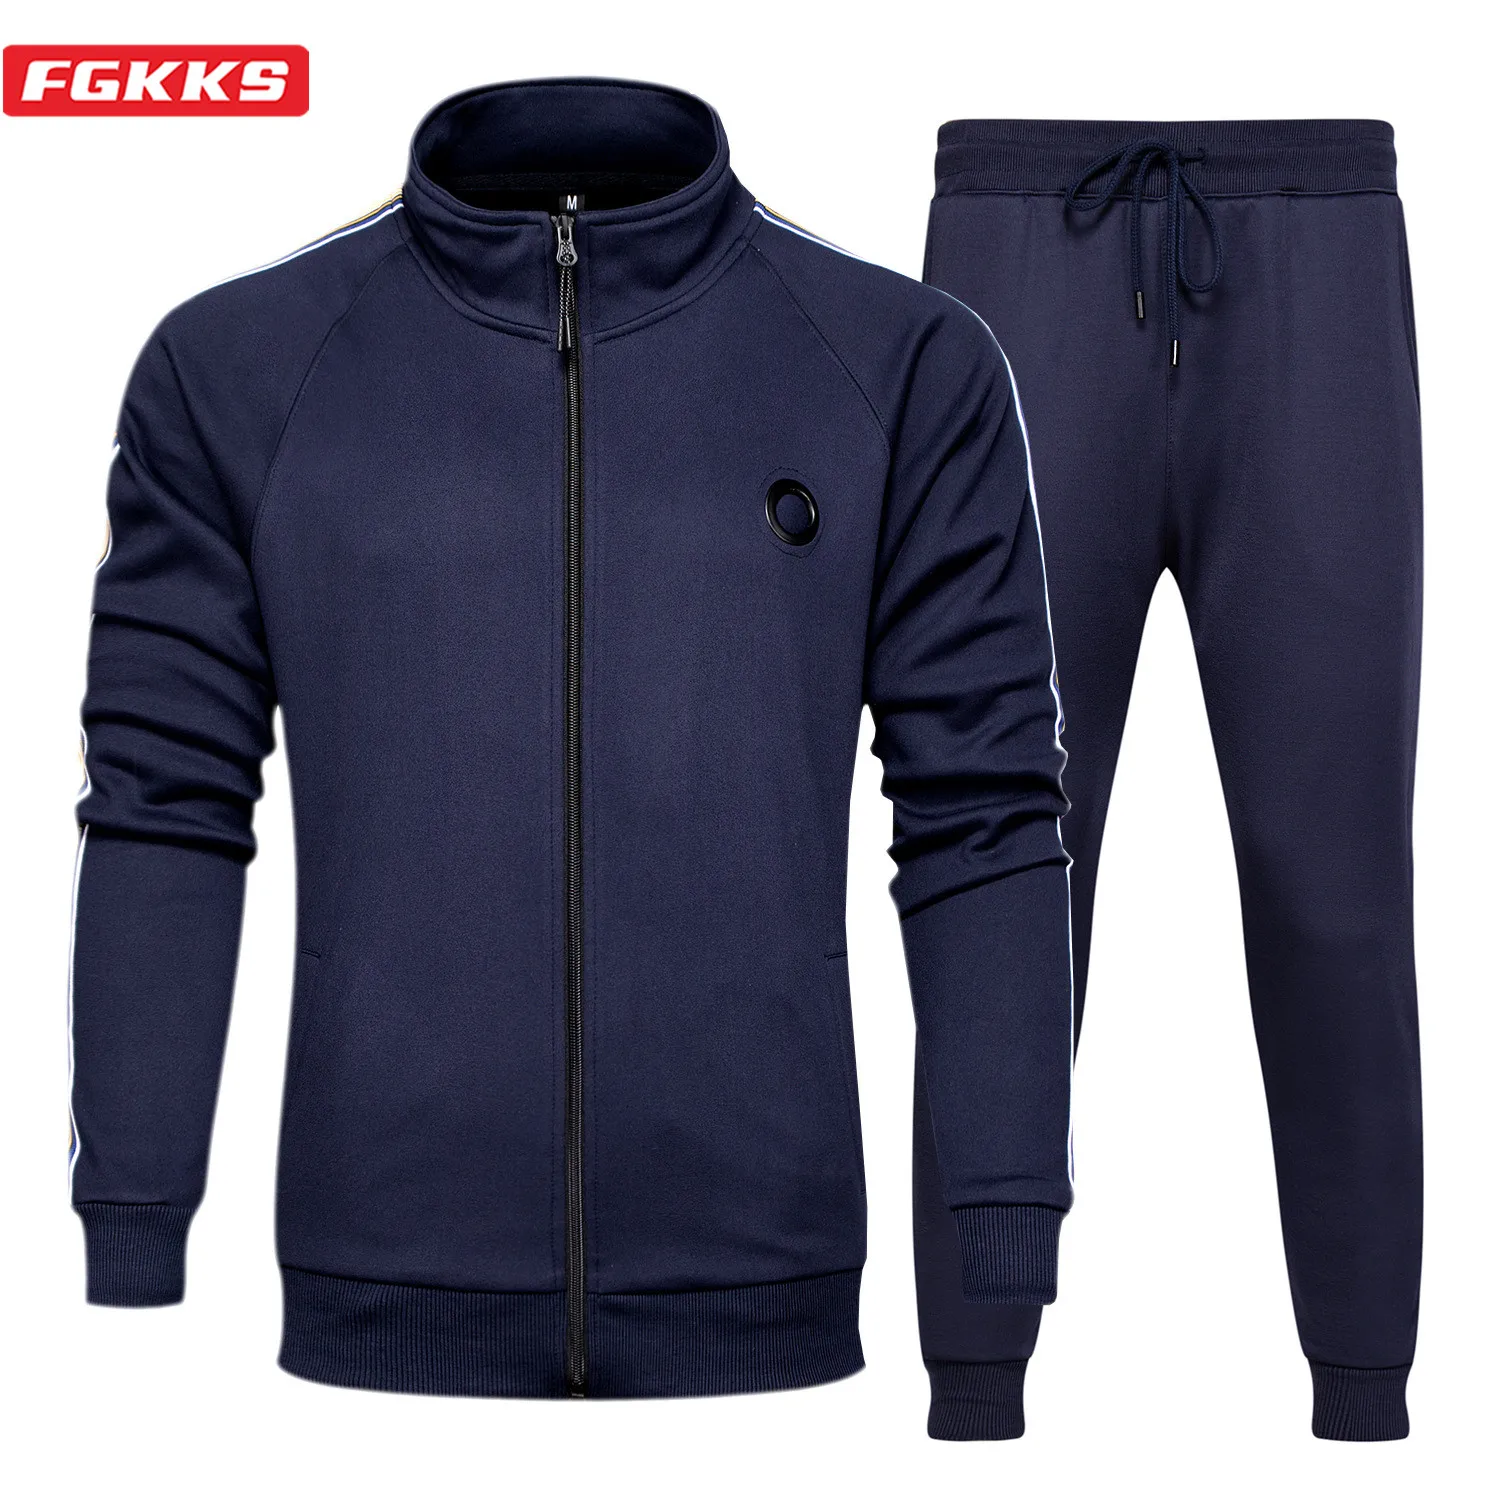 

FGKKS Spring New Men Casual Suit Brand Men Sportswear 2-Piece Hoodie + Pants Set Jogging Fitness Sportswear TrackSuit Male